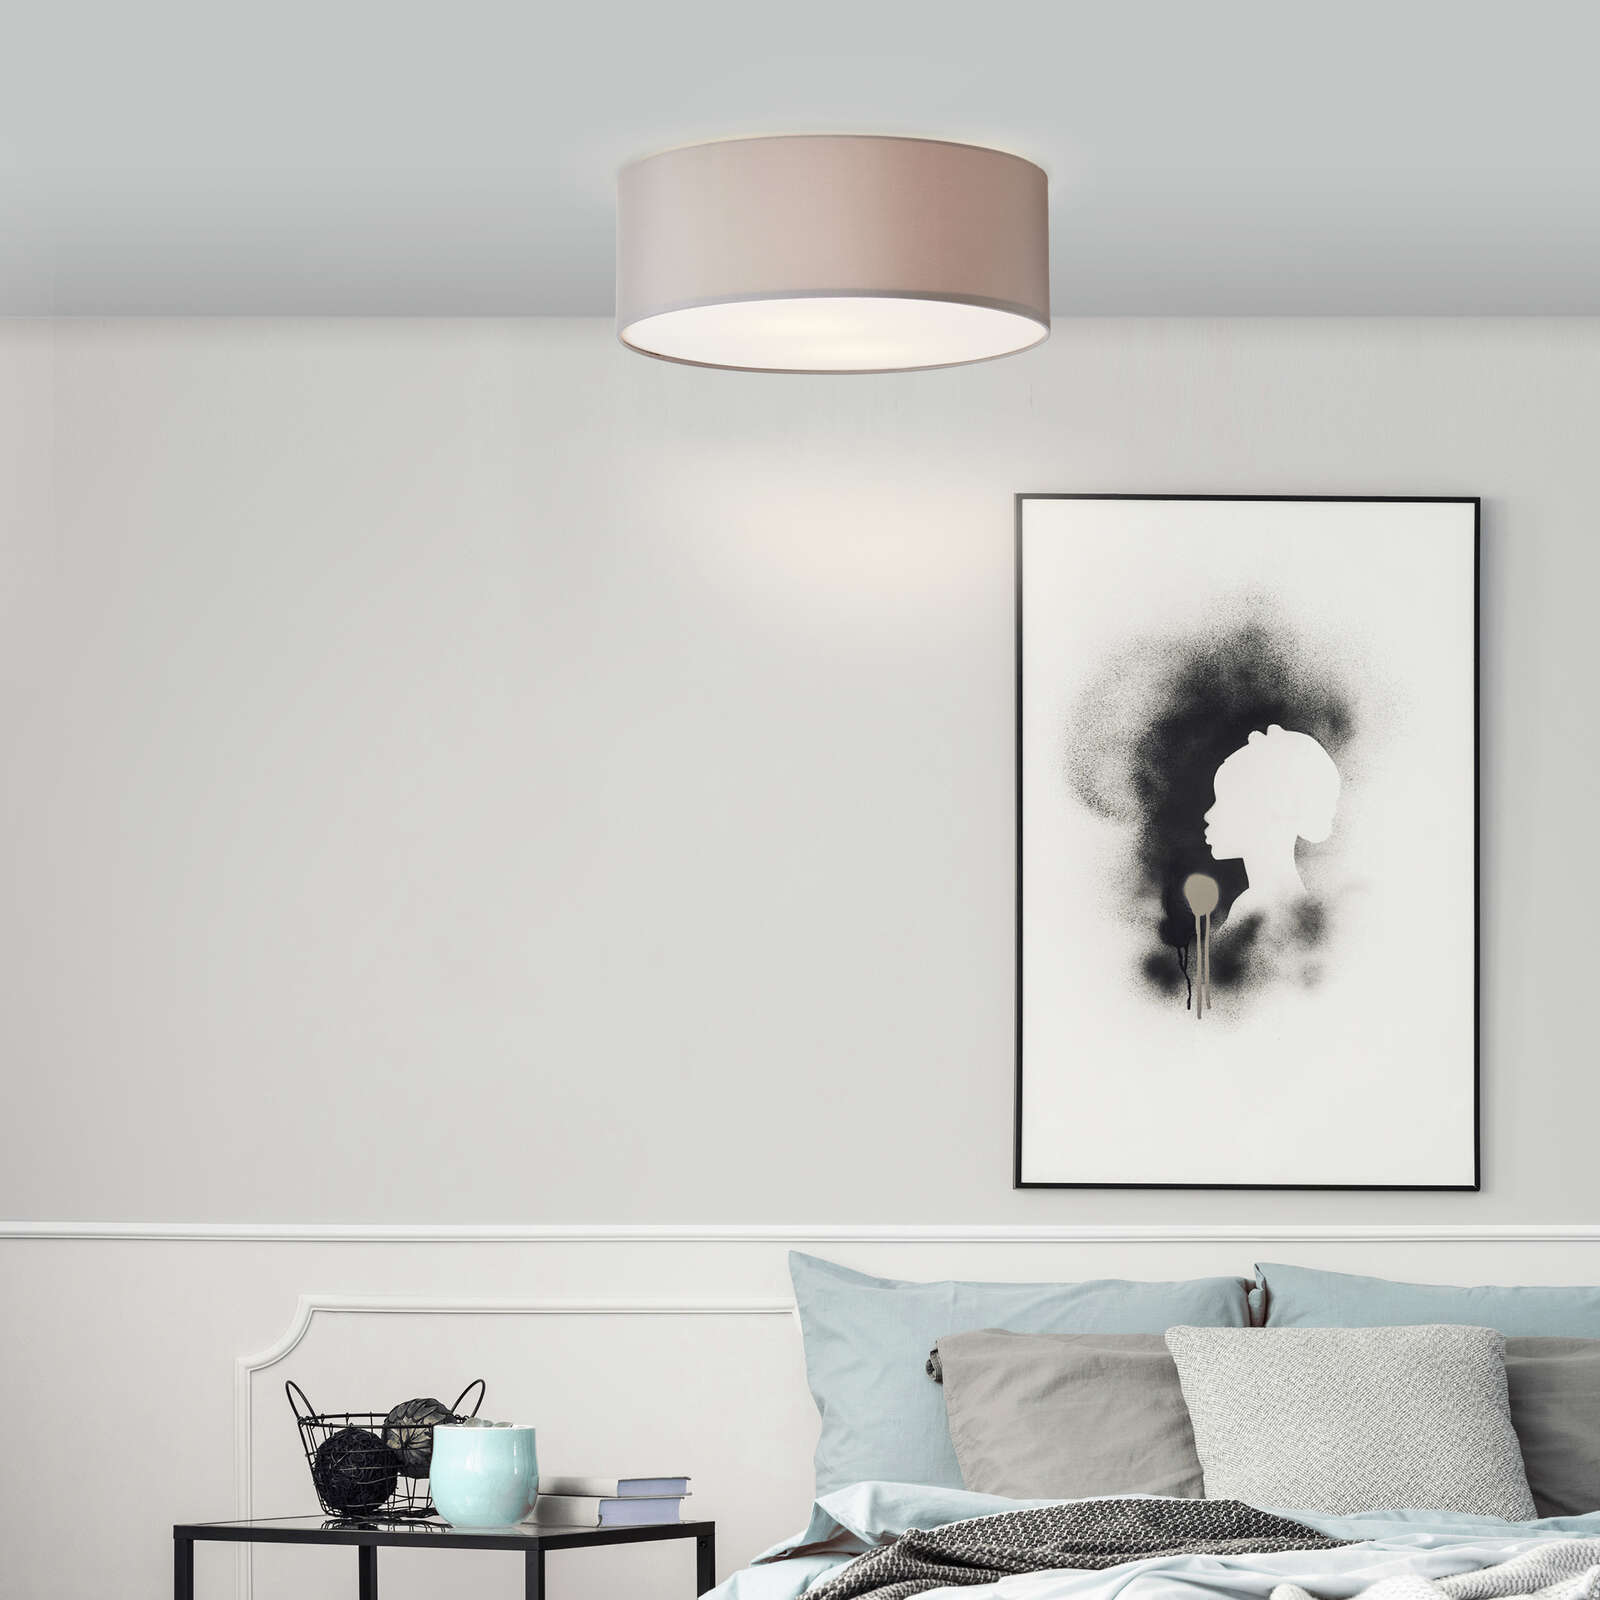             Textiele plafondlamp - Alina - Grijs
        